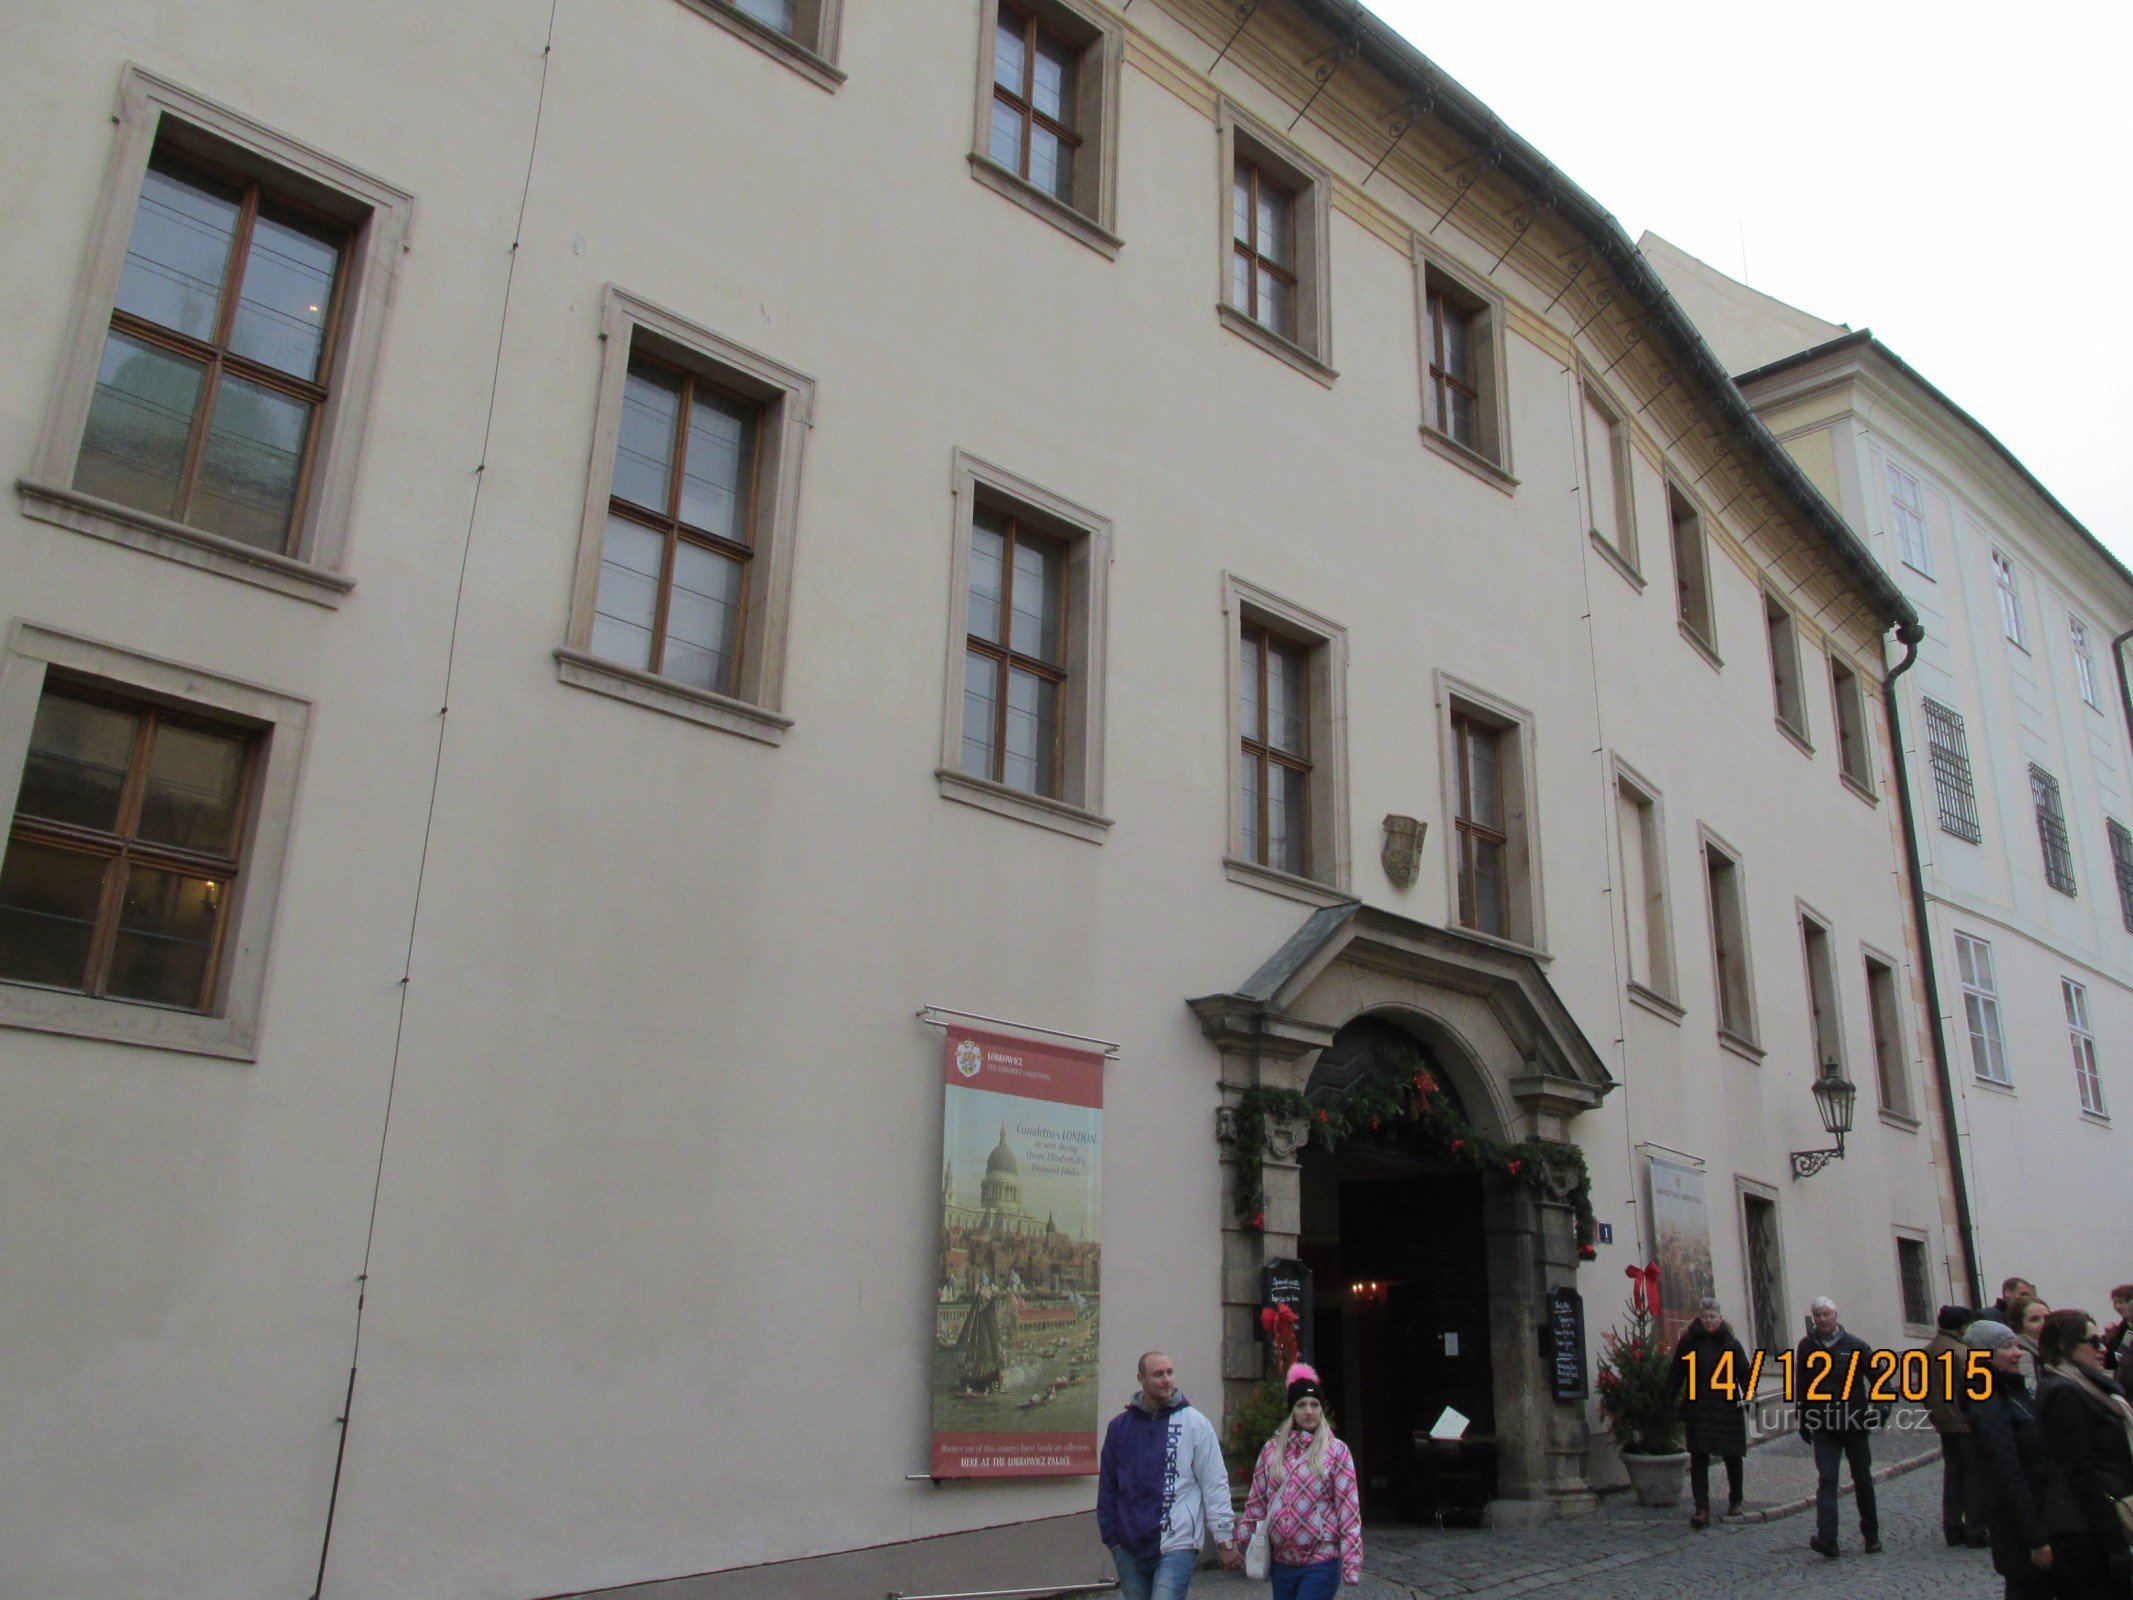 Bảo tàng trong Cung điện Lobkowicz